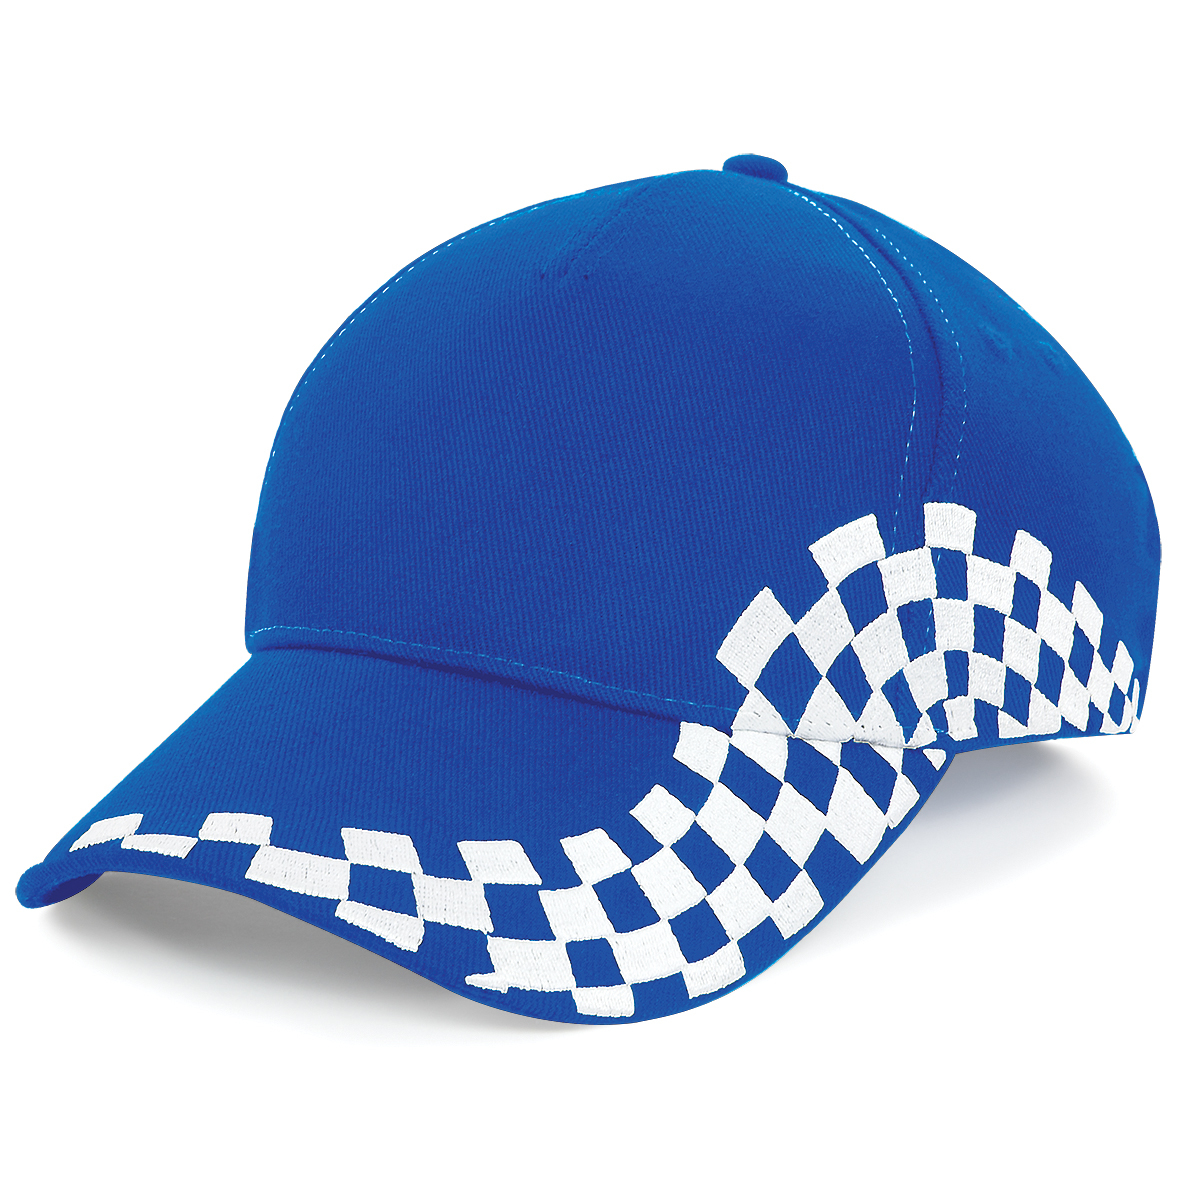 Grand Prix Cap in blue with white checkerboard